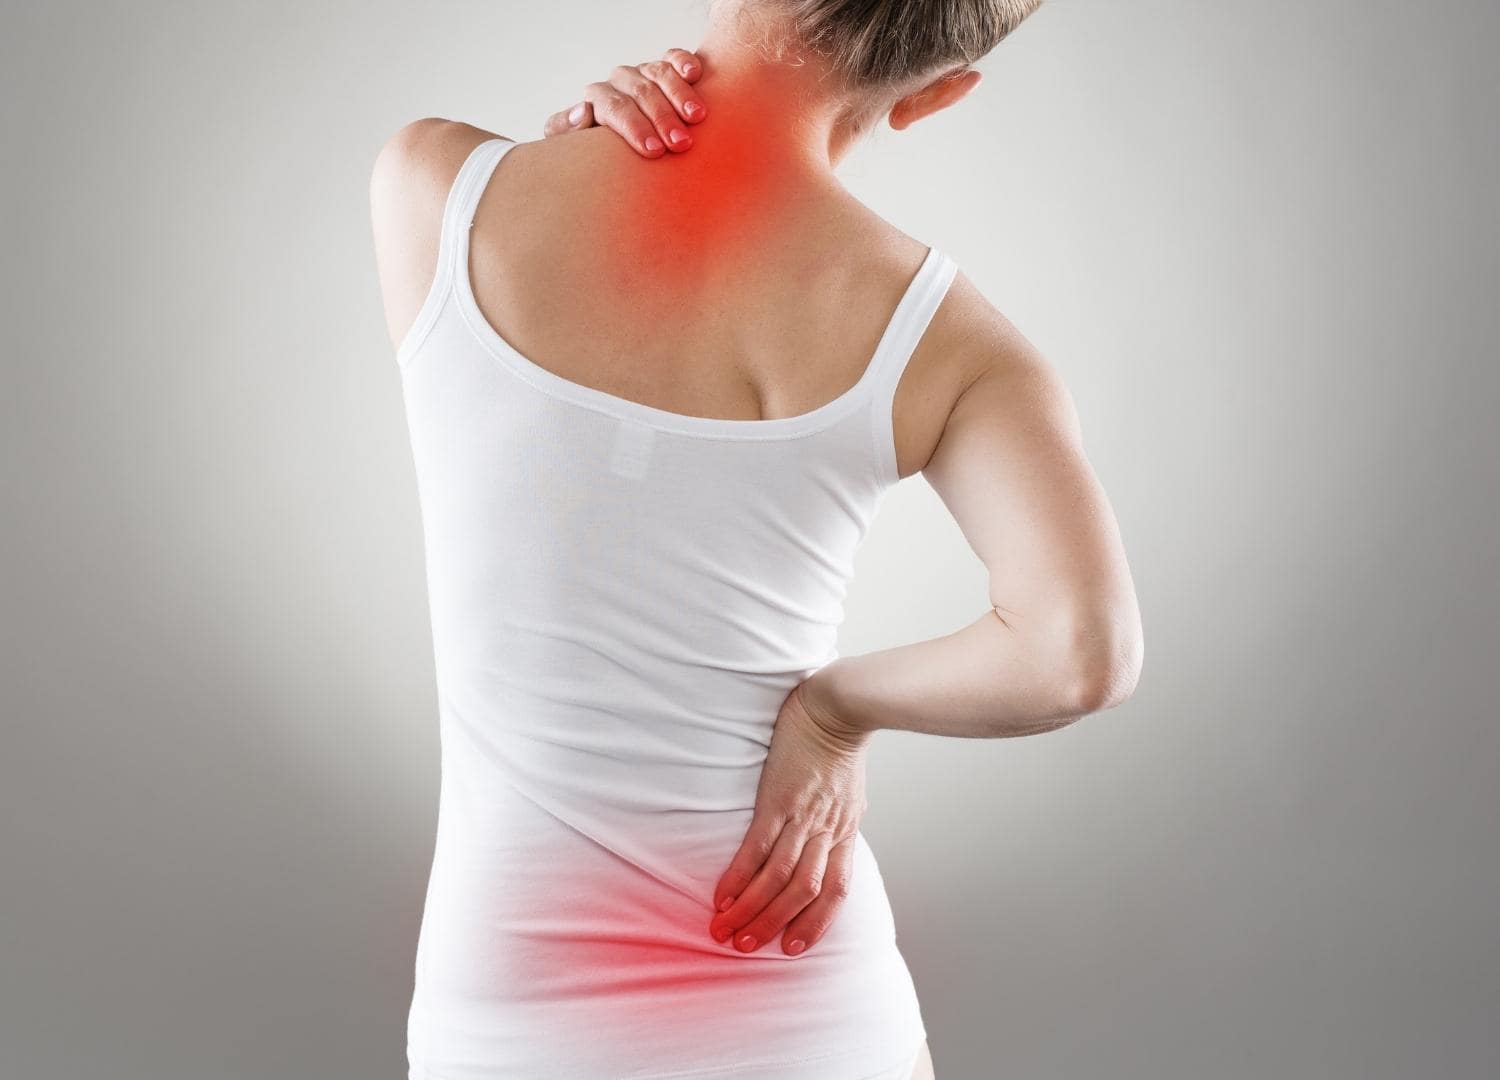 אישה סובלת מצוואר תפוס וכאבי גב תחתון, מאמר בלוג על כאב גב תחתון ודרכי טיפול